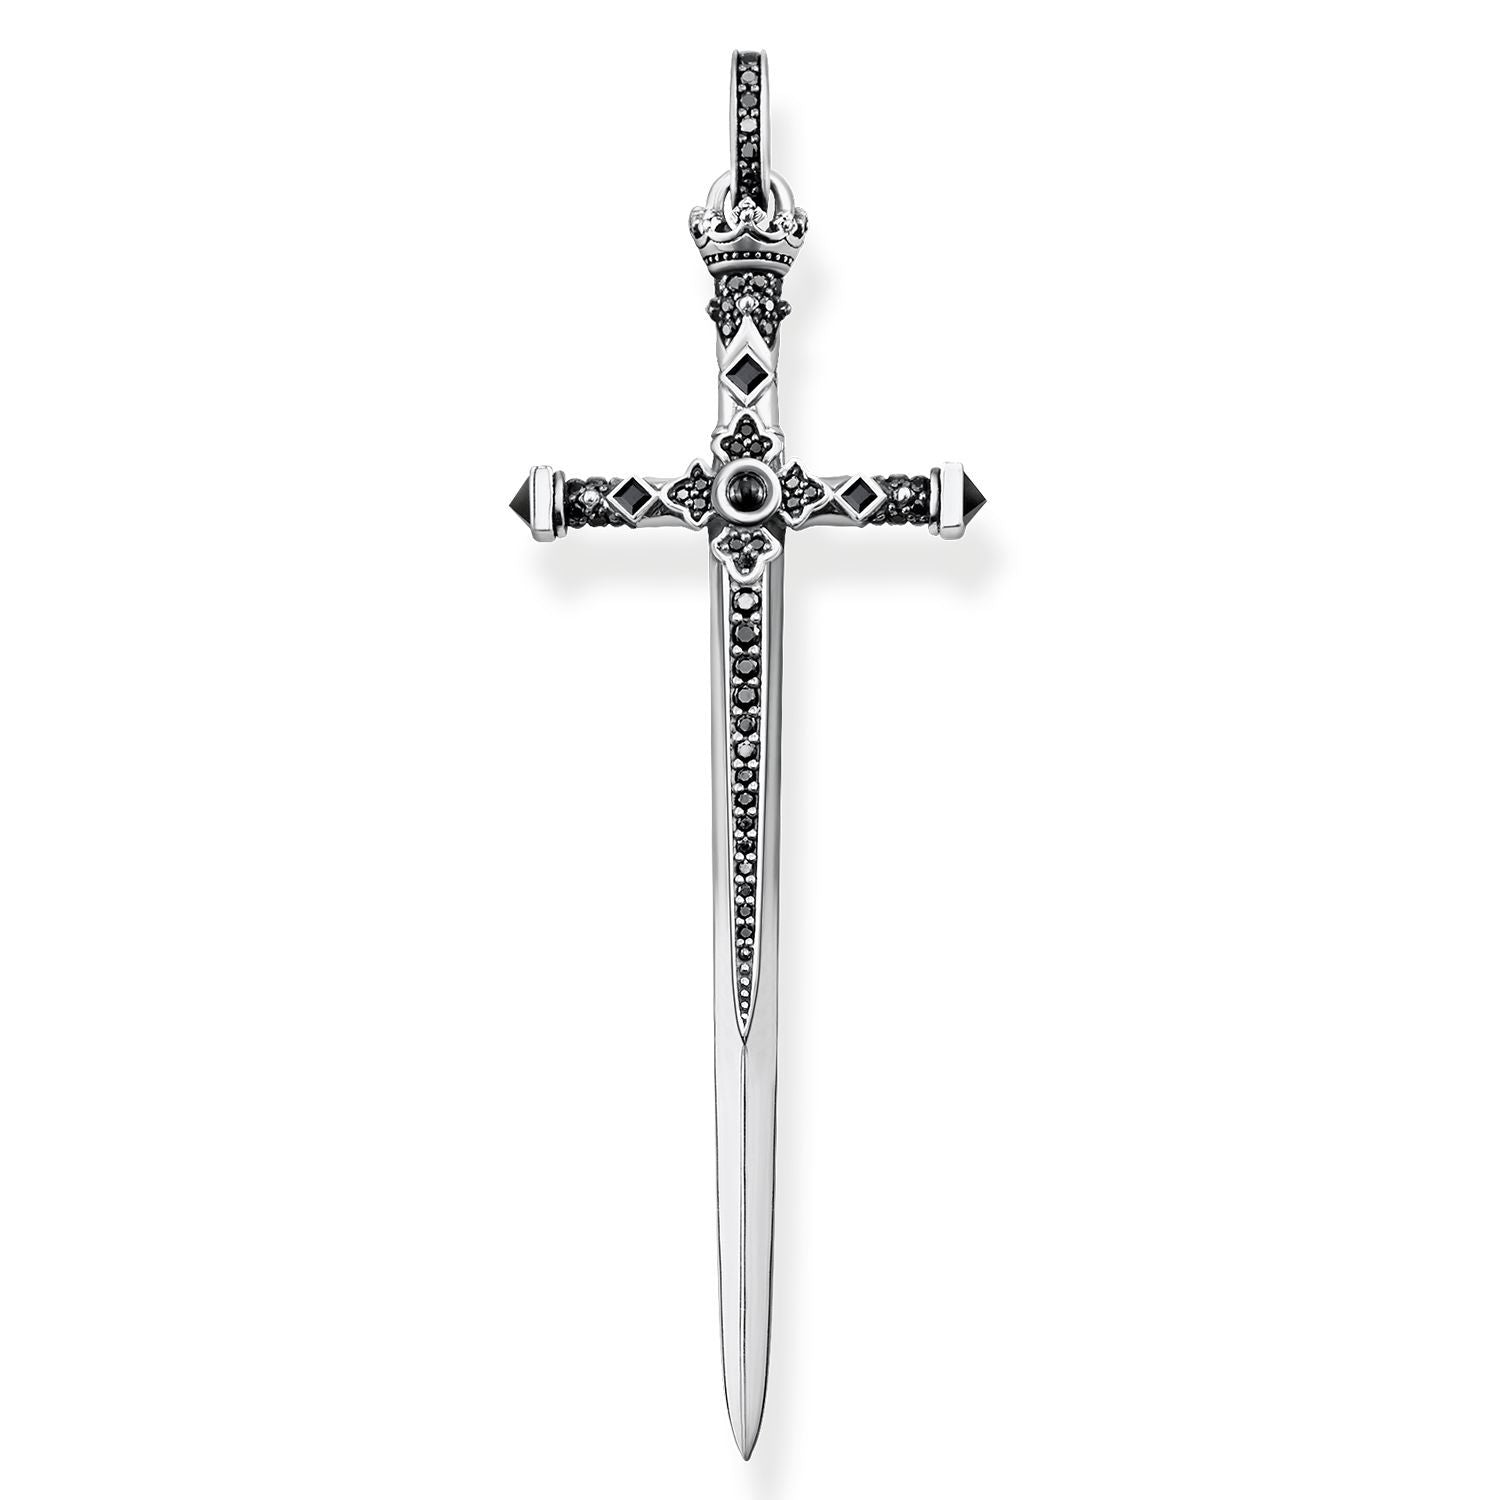 Buy Pendant "Sword" by Thomas Sabo online - THOMAS SABO Australia